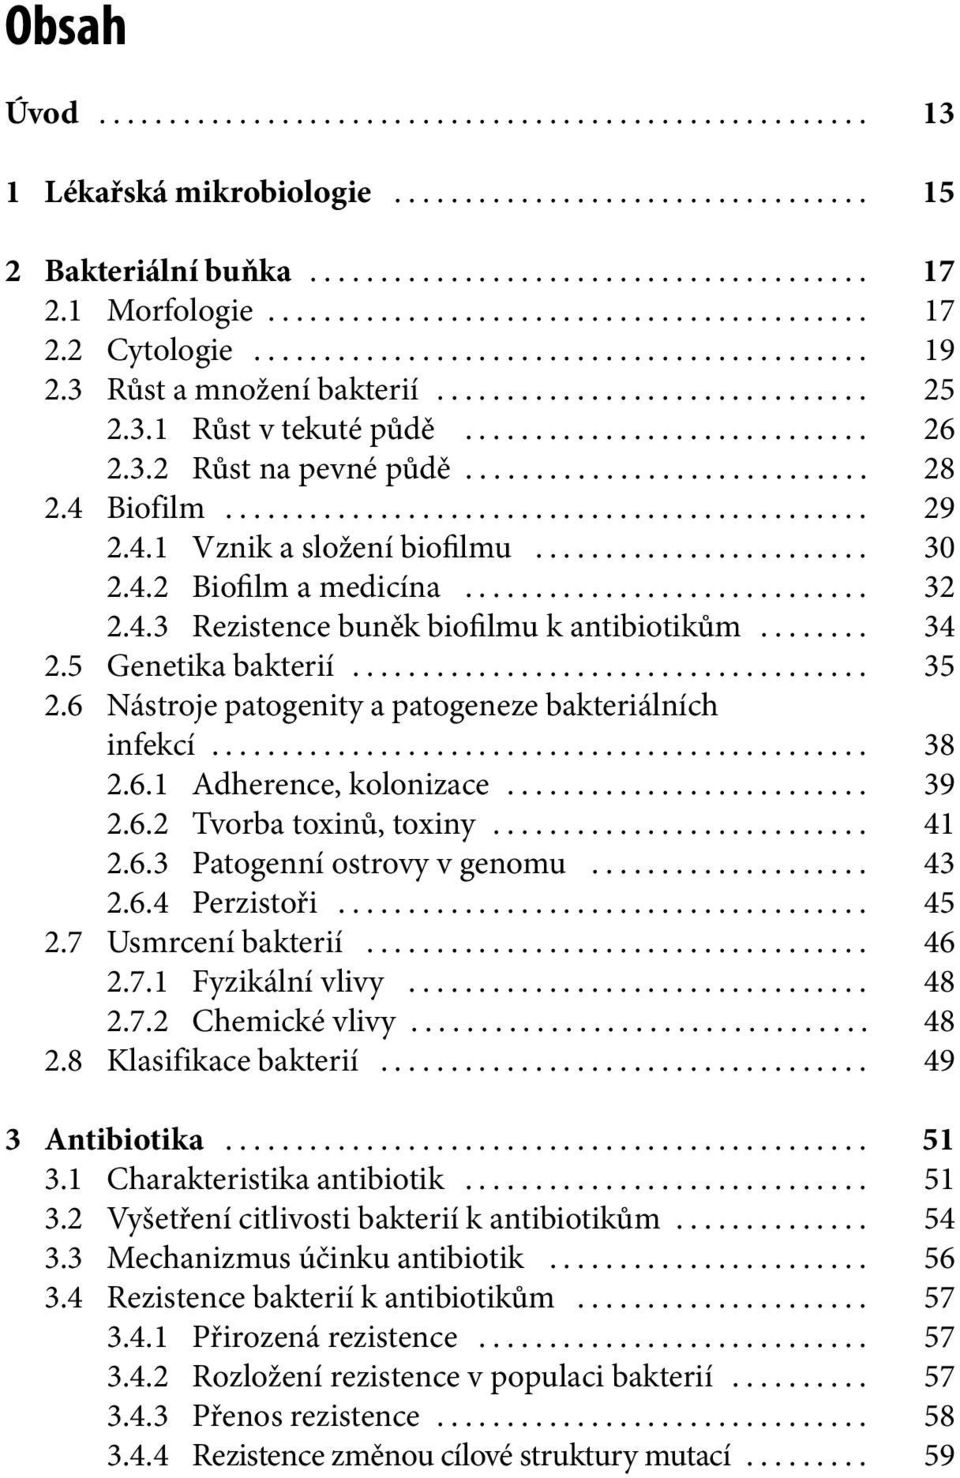 6 Nástroje patogenity a patogeneze bakteriálních infekcí... 38 2.6.1 Adherence, kolonizace... 39 2.6.2 Tvorba toxinů, toxiny... 41 2.6.3 Patogenní ostrovy v genomu... 43 2.6.4 Perzistoři... 45 2.